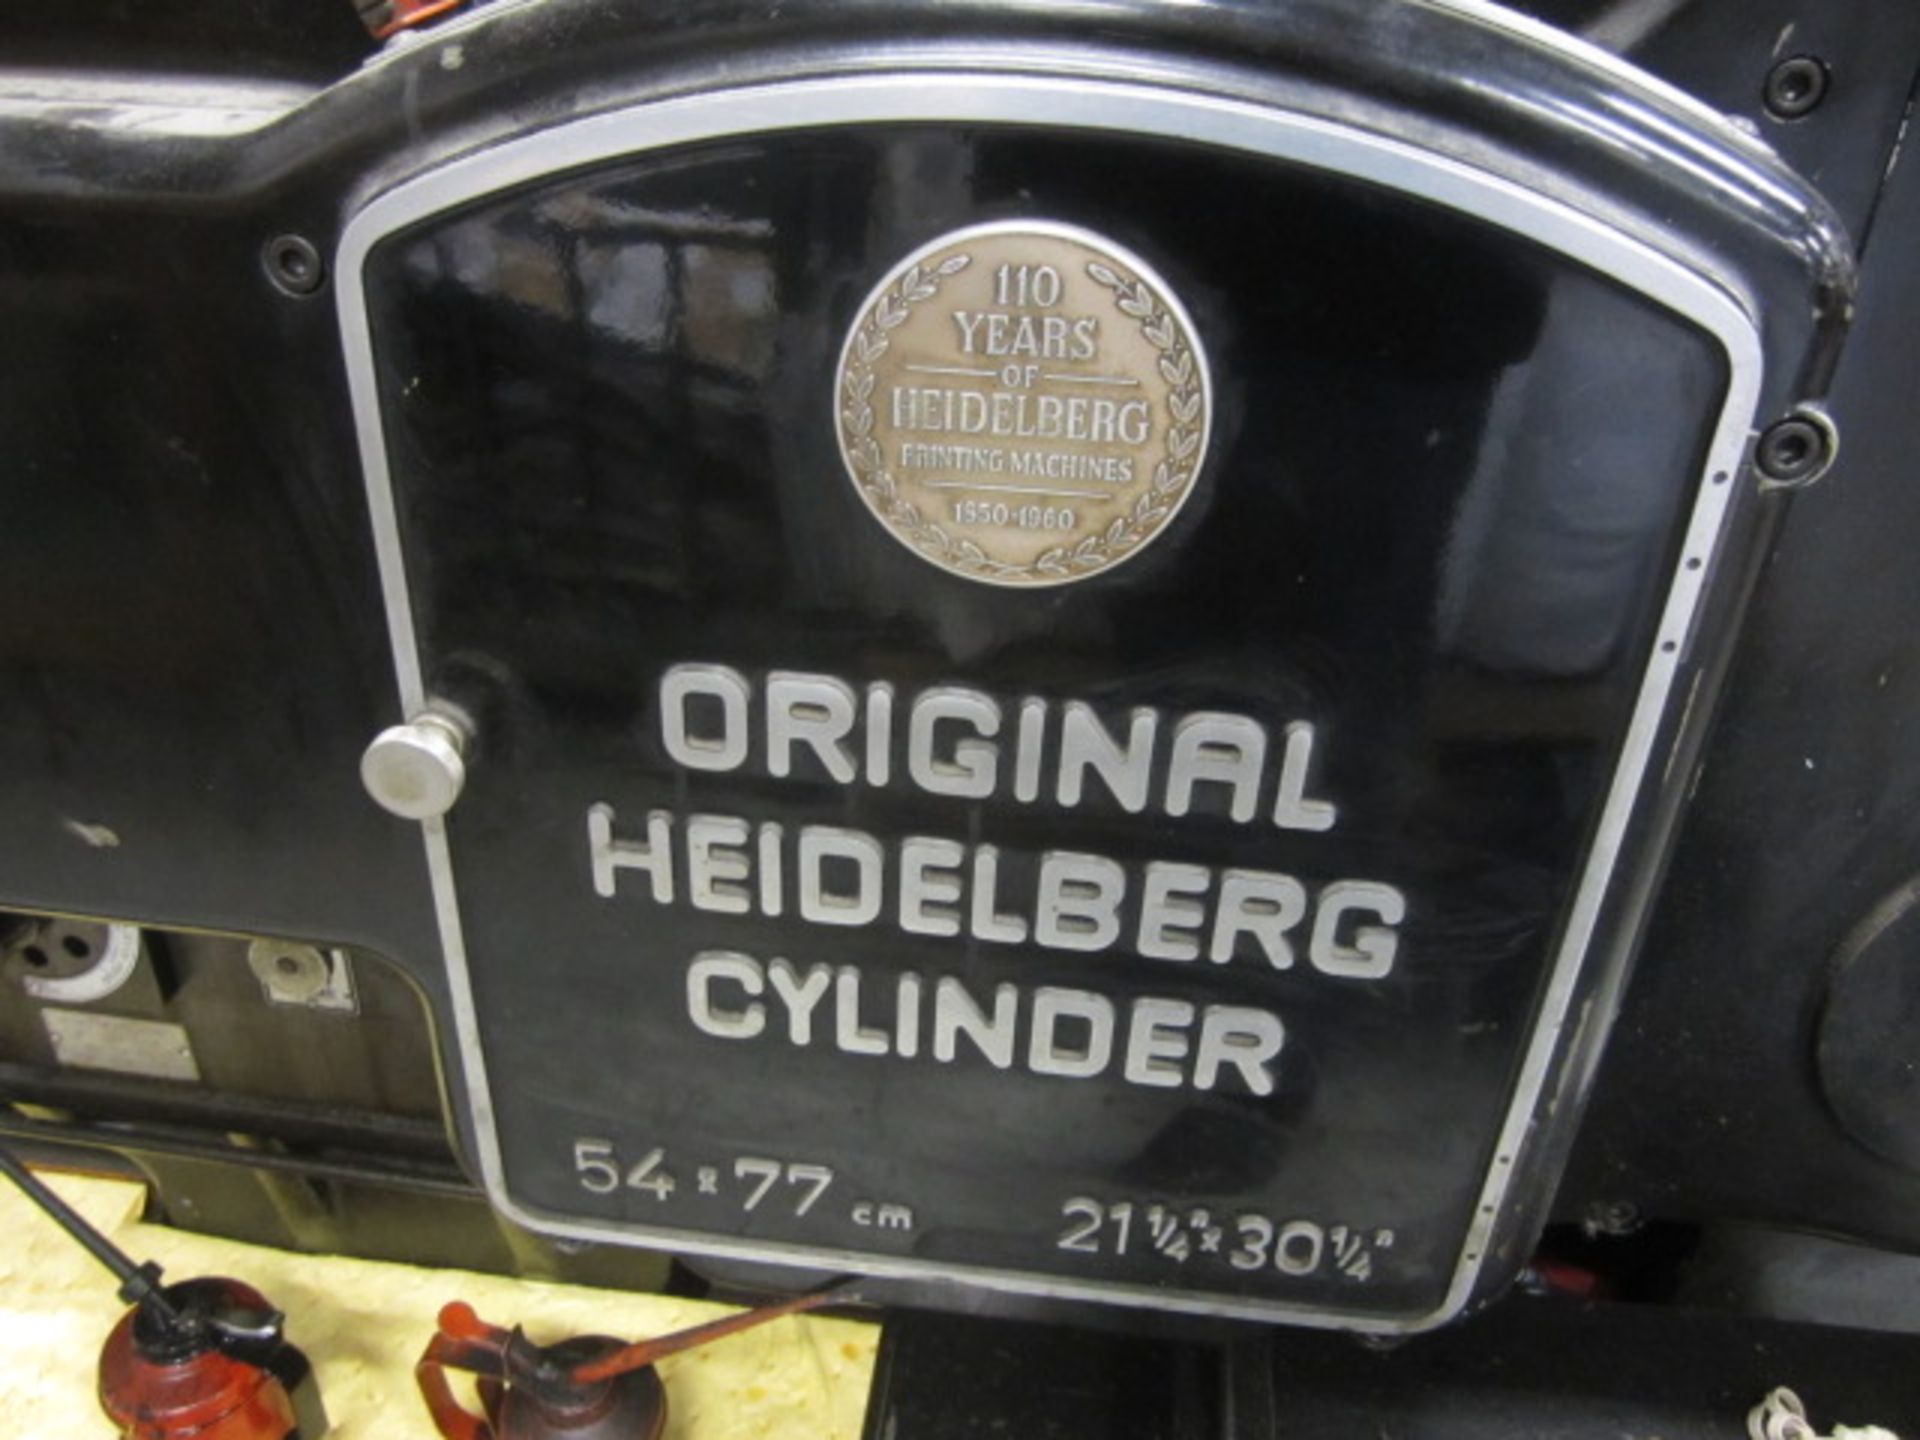 Original Heidelberg cylinder press, 54 x 77cm x 211/4" x 301/4" (Please note: A work Method... - Bild 5 aus 5